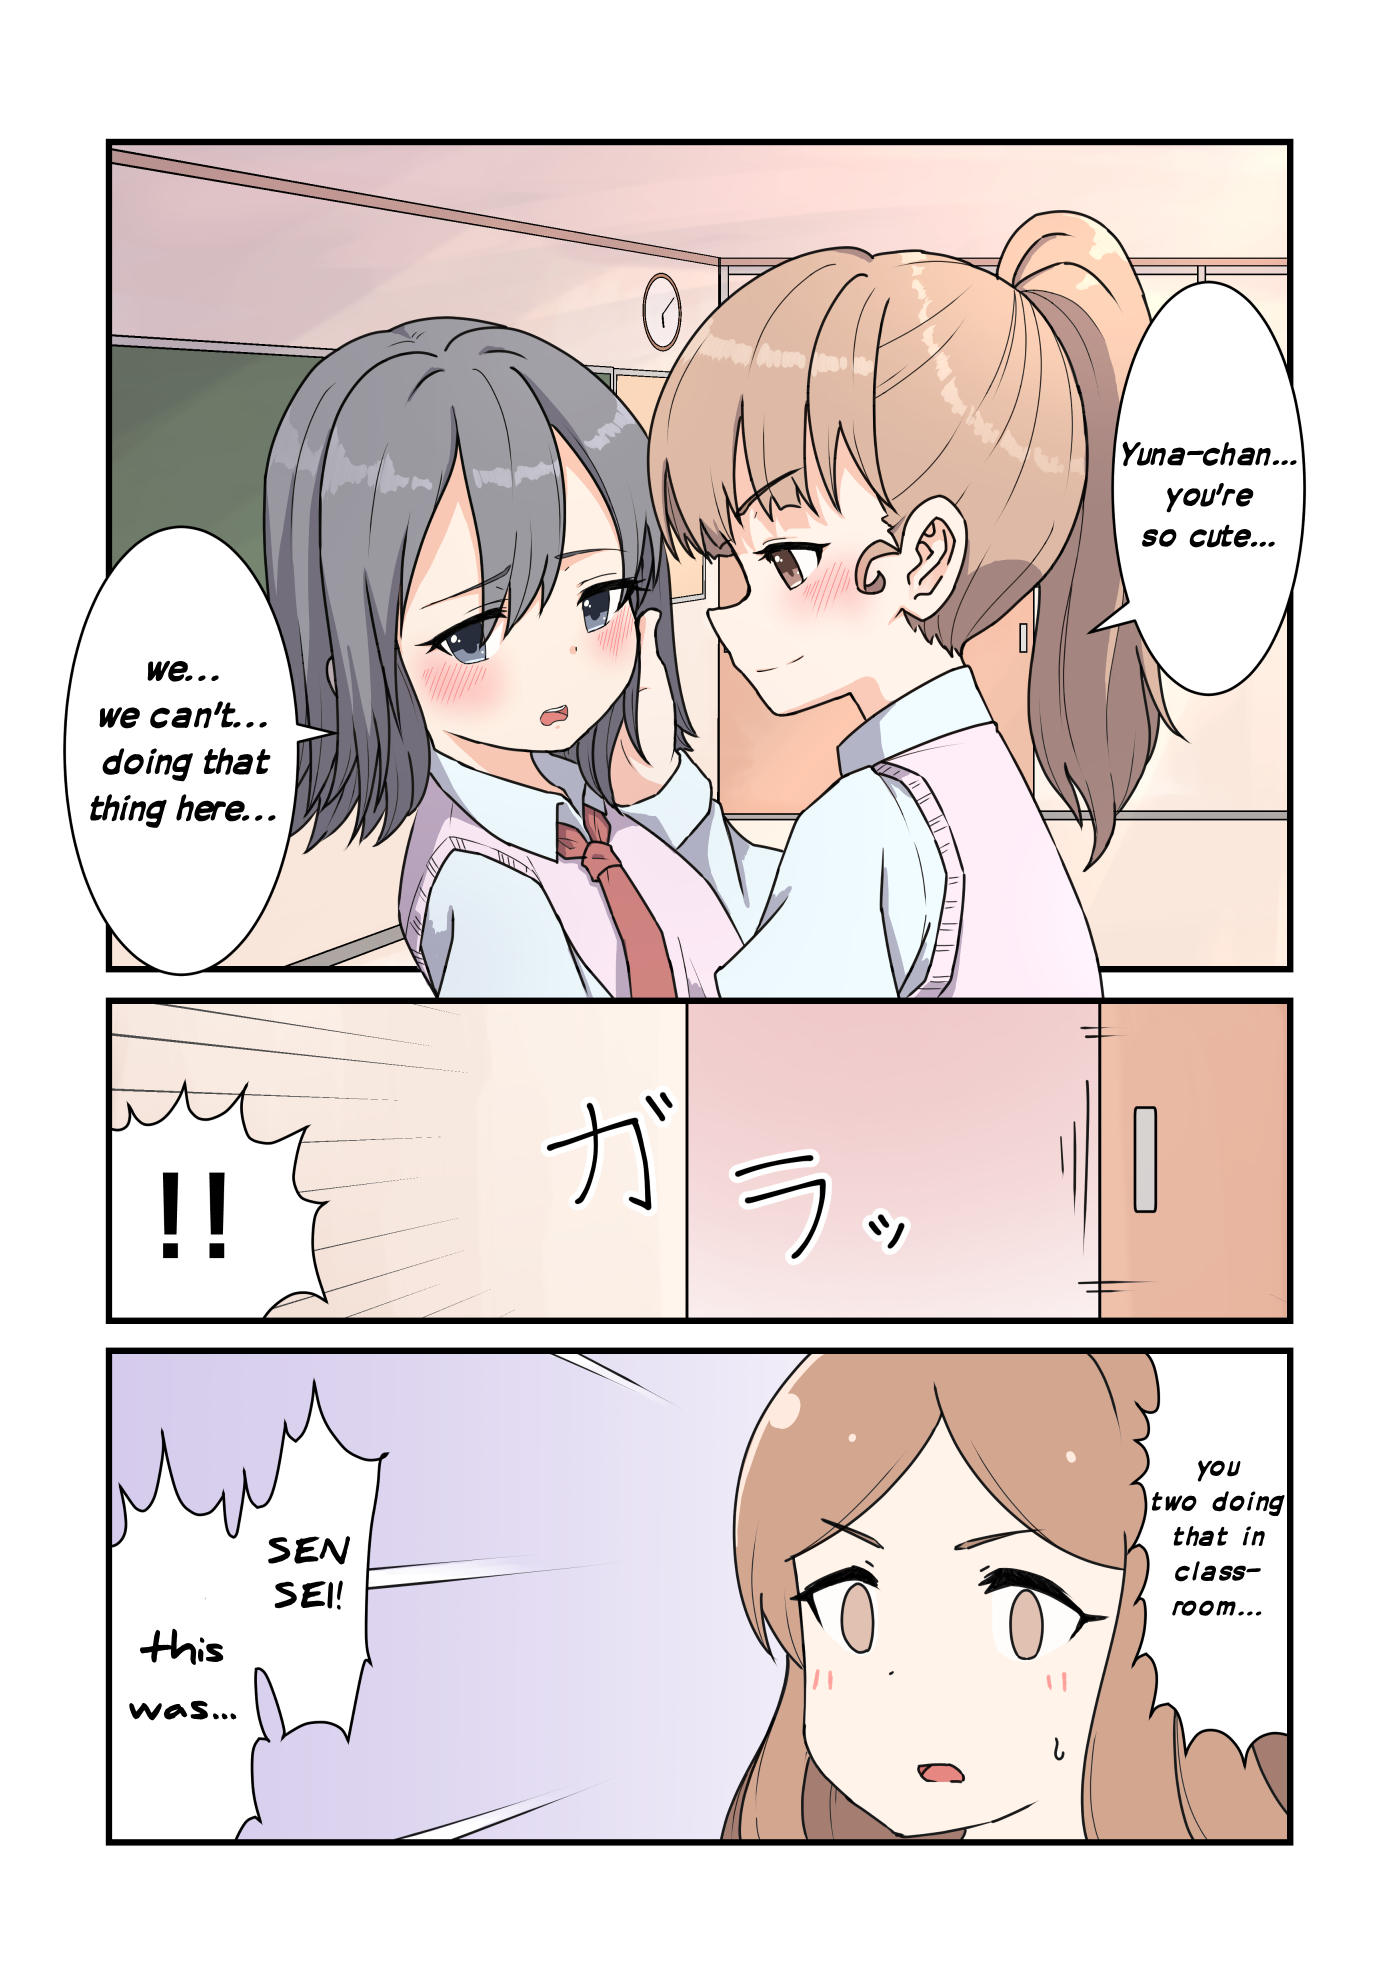 Heiwa Na Yuri Manga Series - Page 1